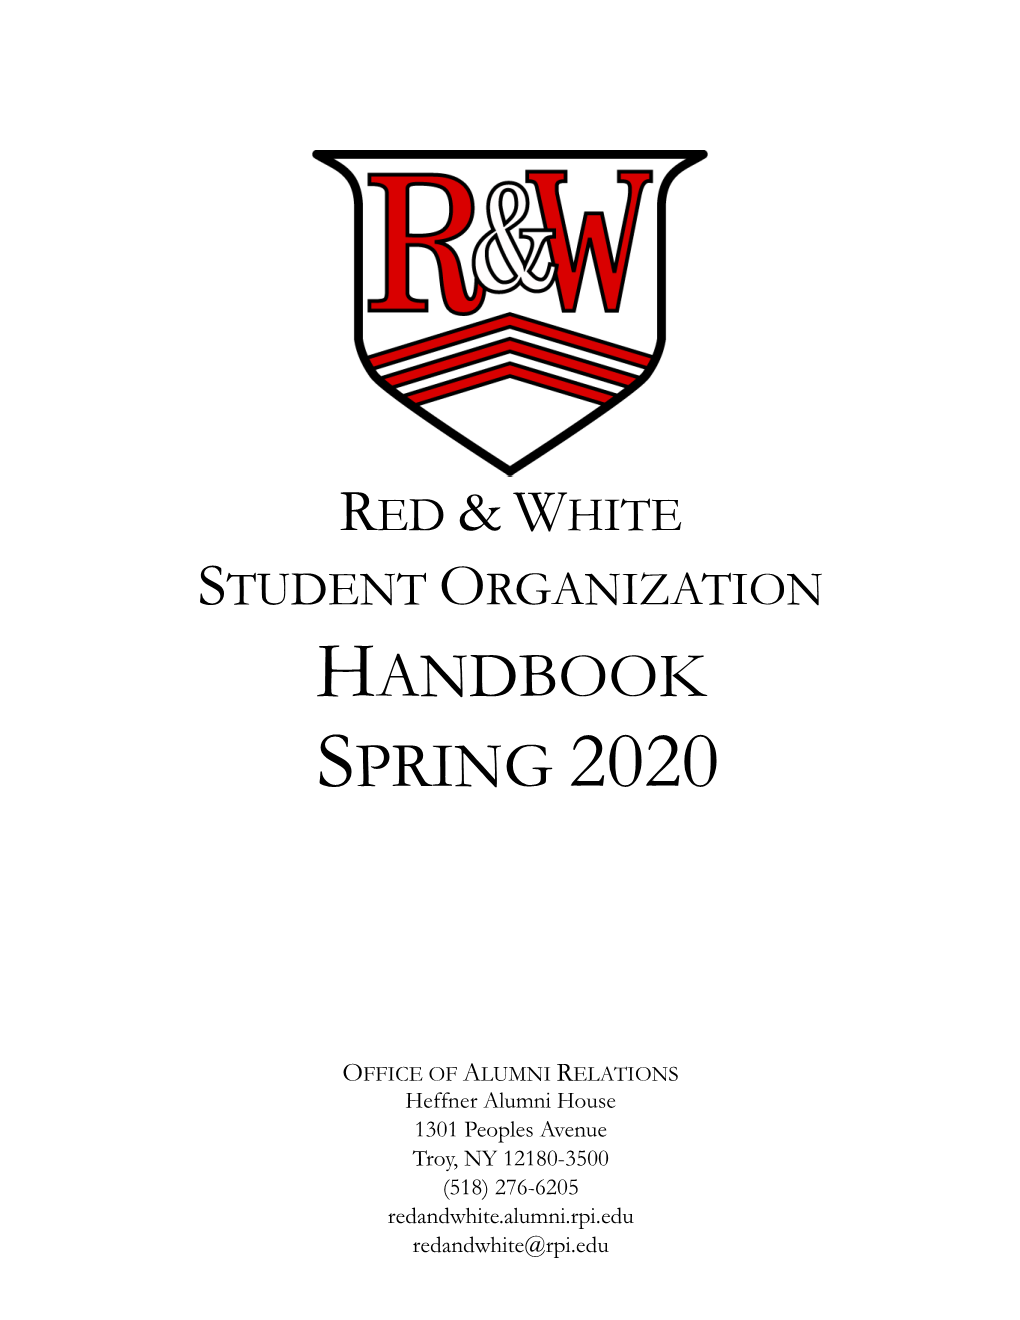 Handbook Spring 2020